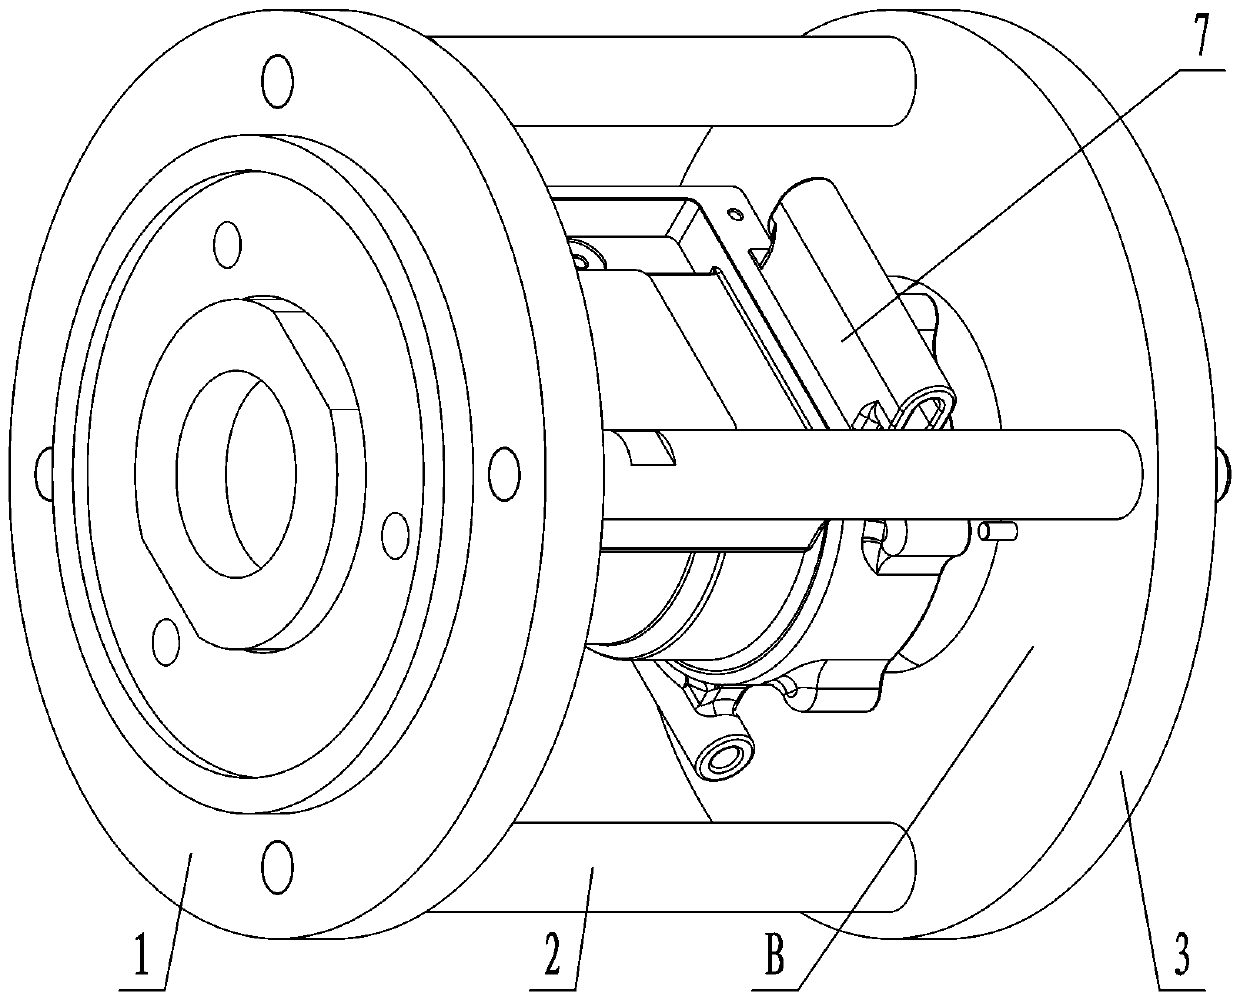 Machine shell inner hole machining method